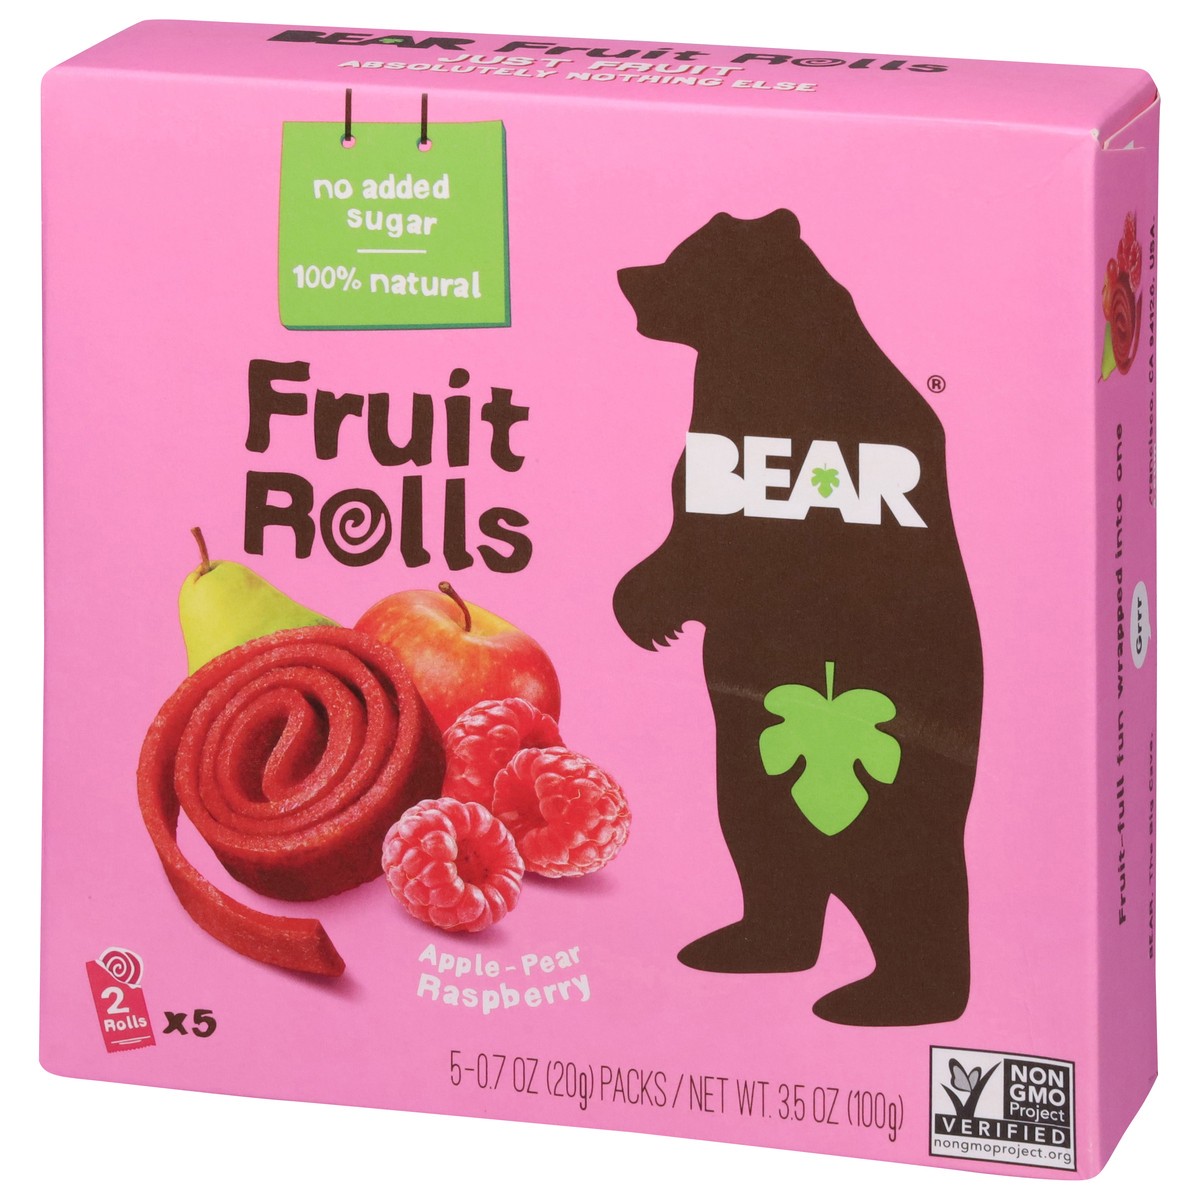 slide 3 of 9, BEAR Apple-Pear Raspberry Fruit Rolls 5 - 0.7 oz Packs, 5 ct